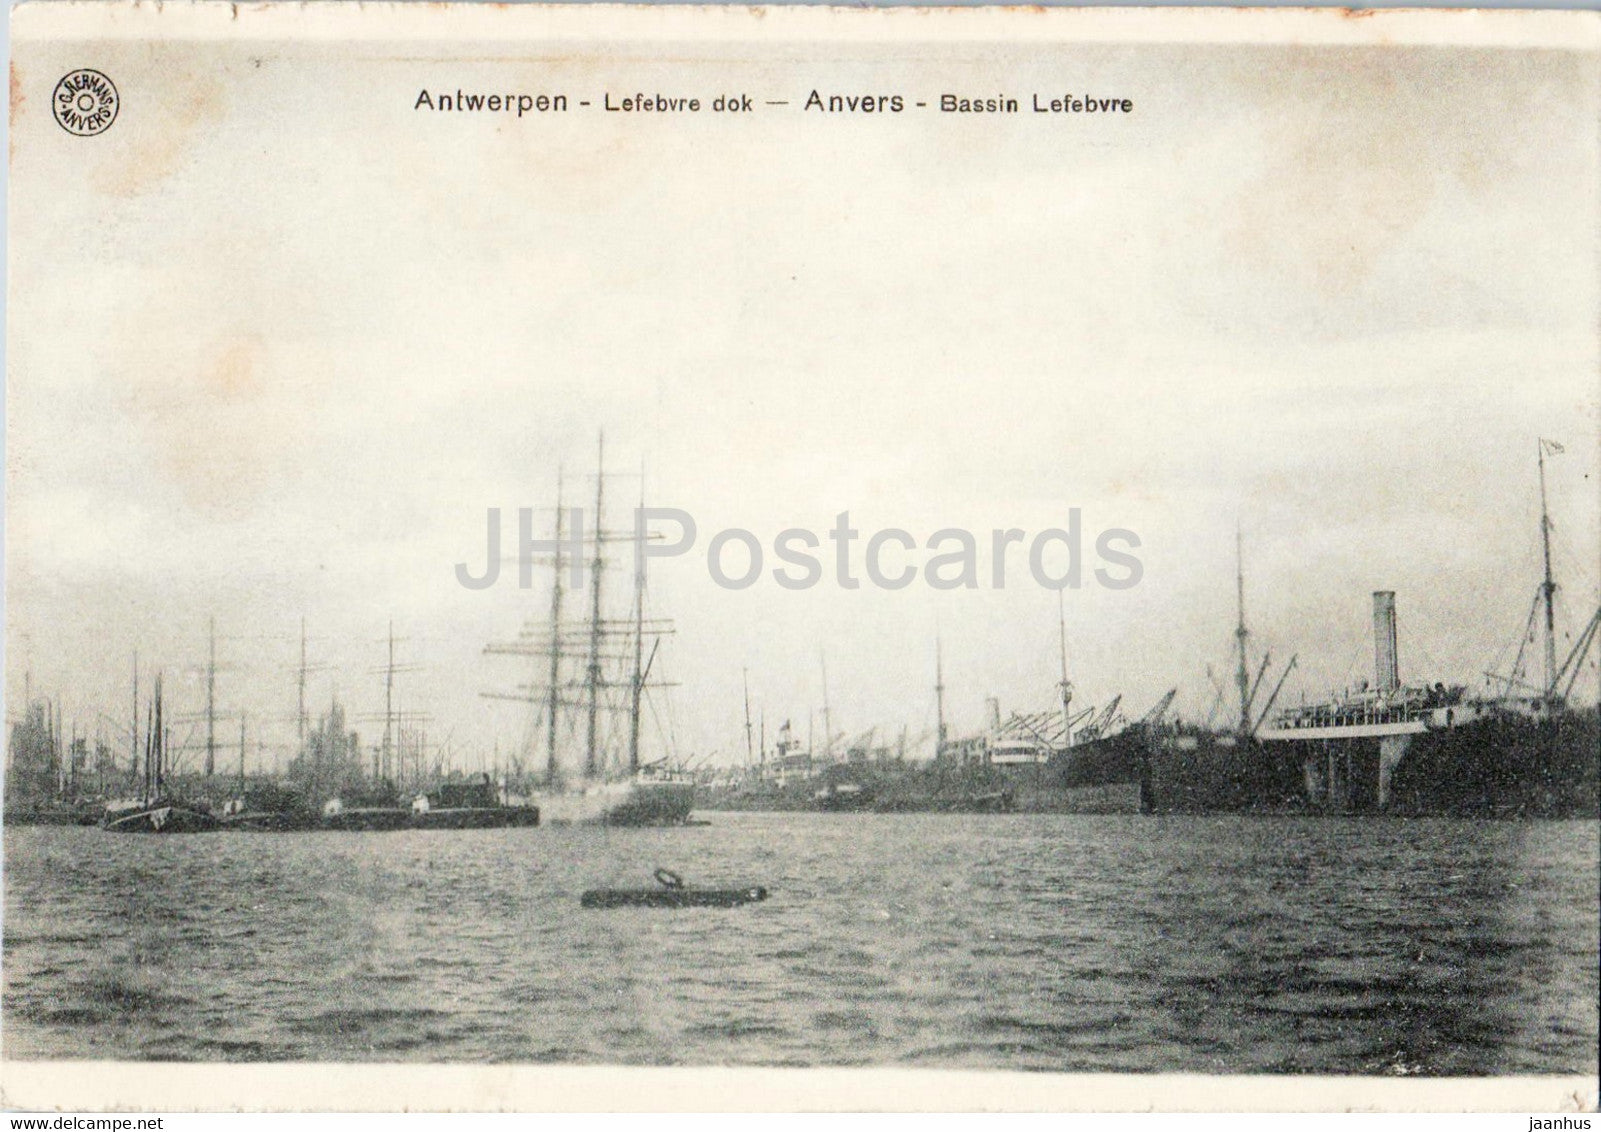 Anvers - Antwerpen - Lefebvre dok - Bassin Lefebvre - ship - old postcard - 1918 - Belgium - used - JH Postcards